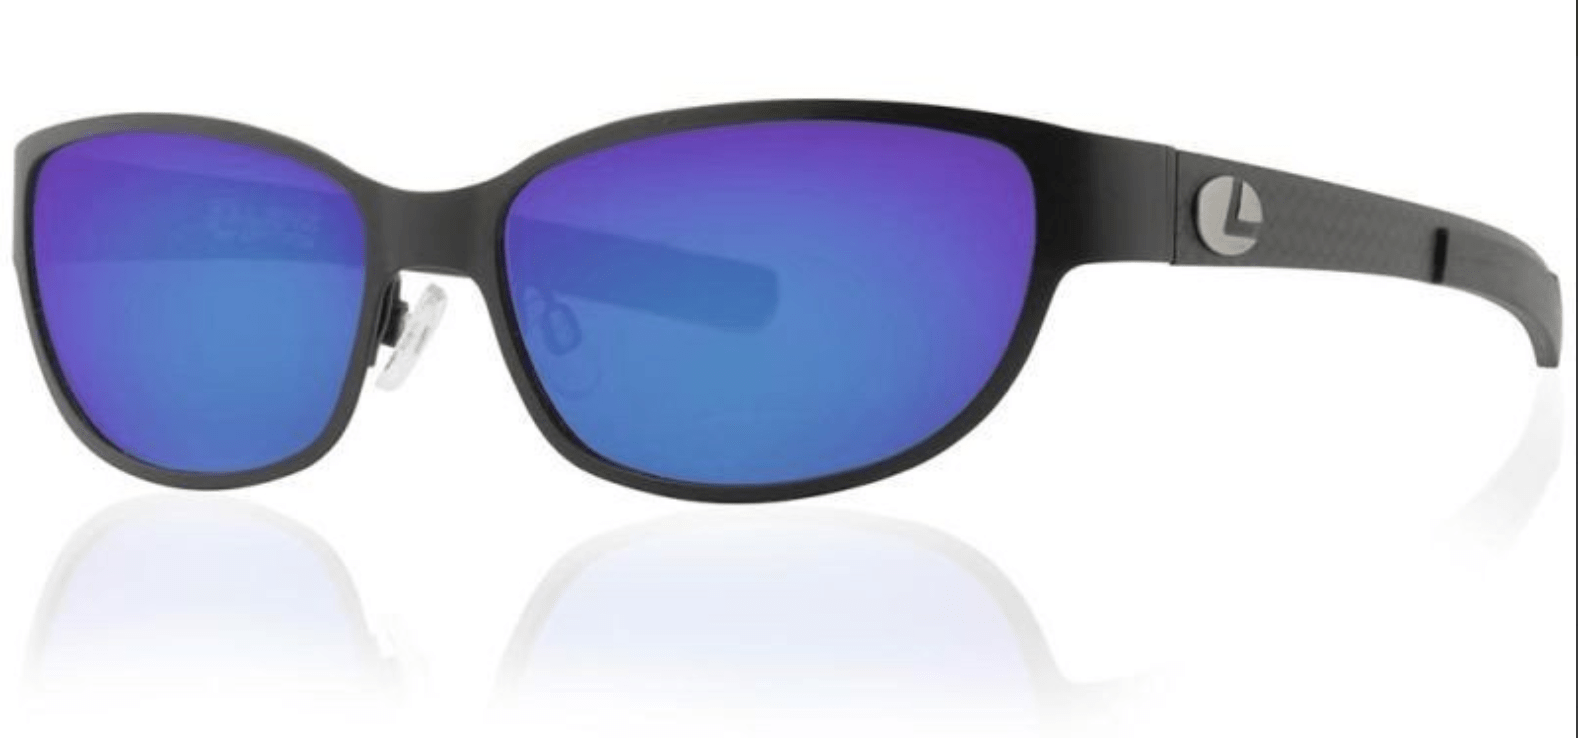 Lenz Optics Sunglasses Black w/Blue Mirror (49191) Lenz Optics Cascapedia Titan/Carbon Sunglasses